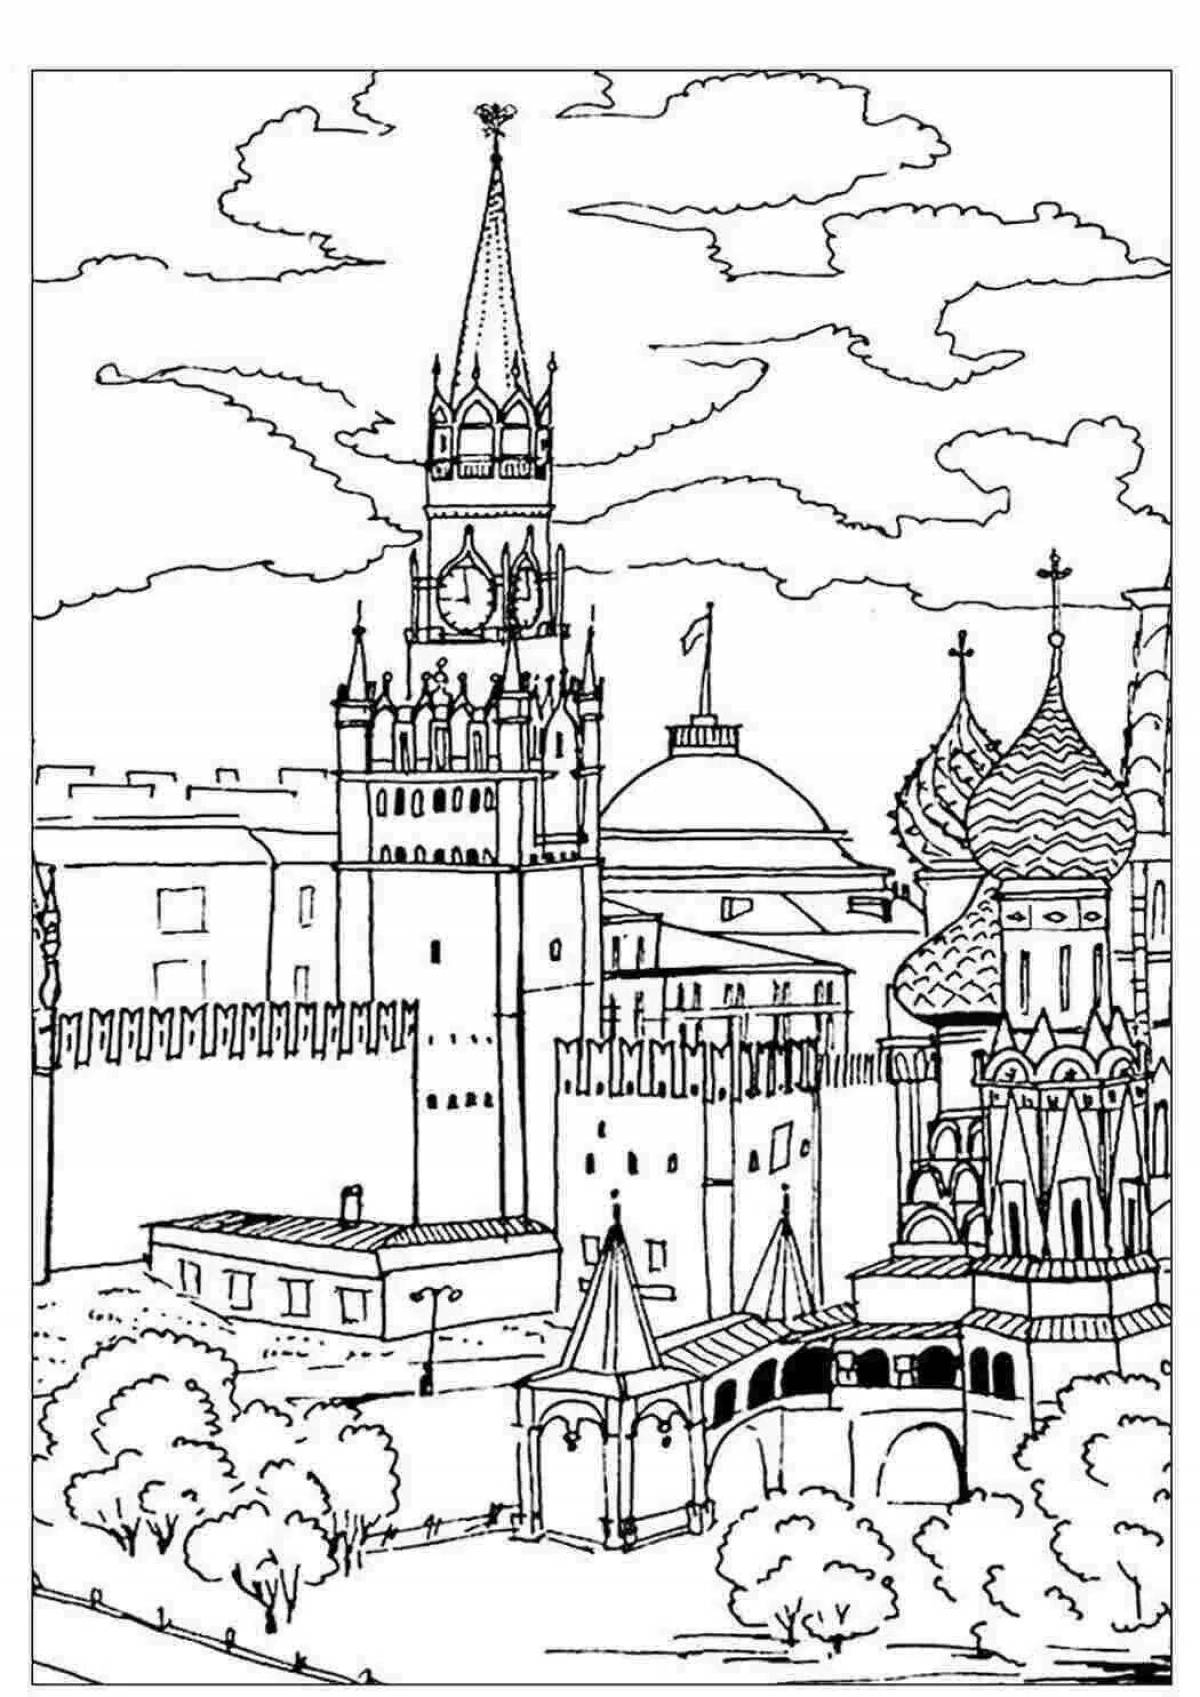 Living Kremlin drawing for children